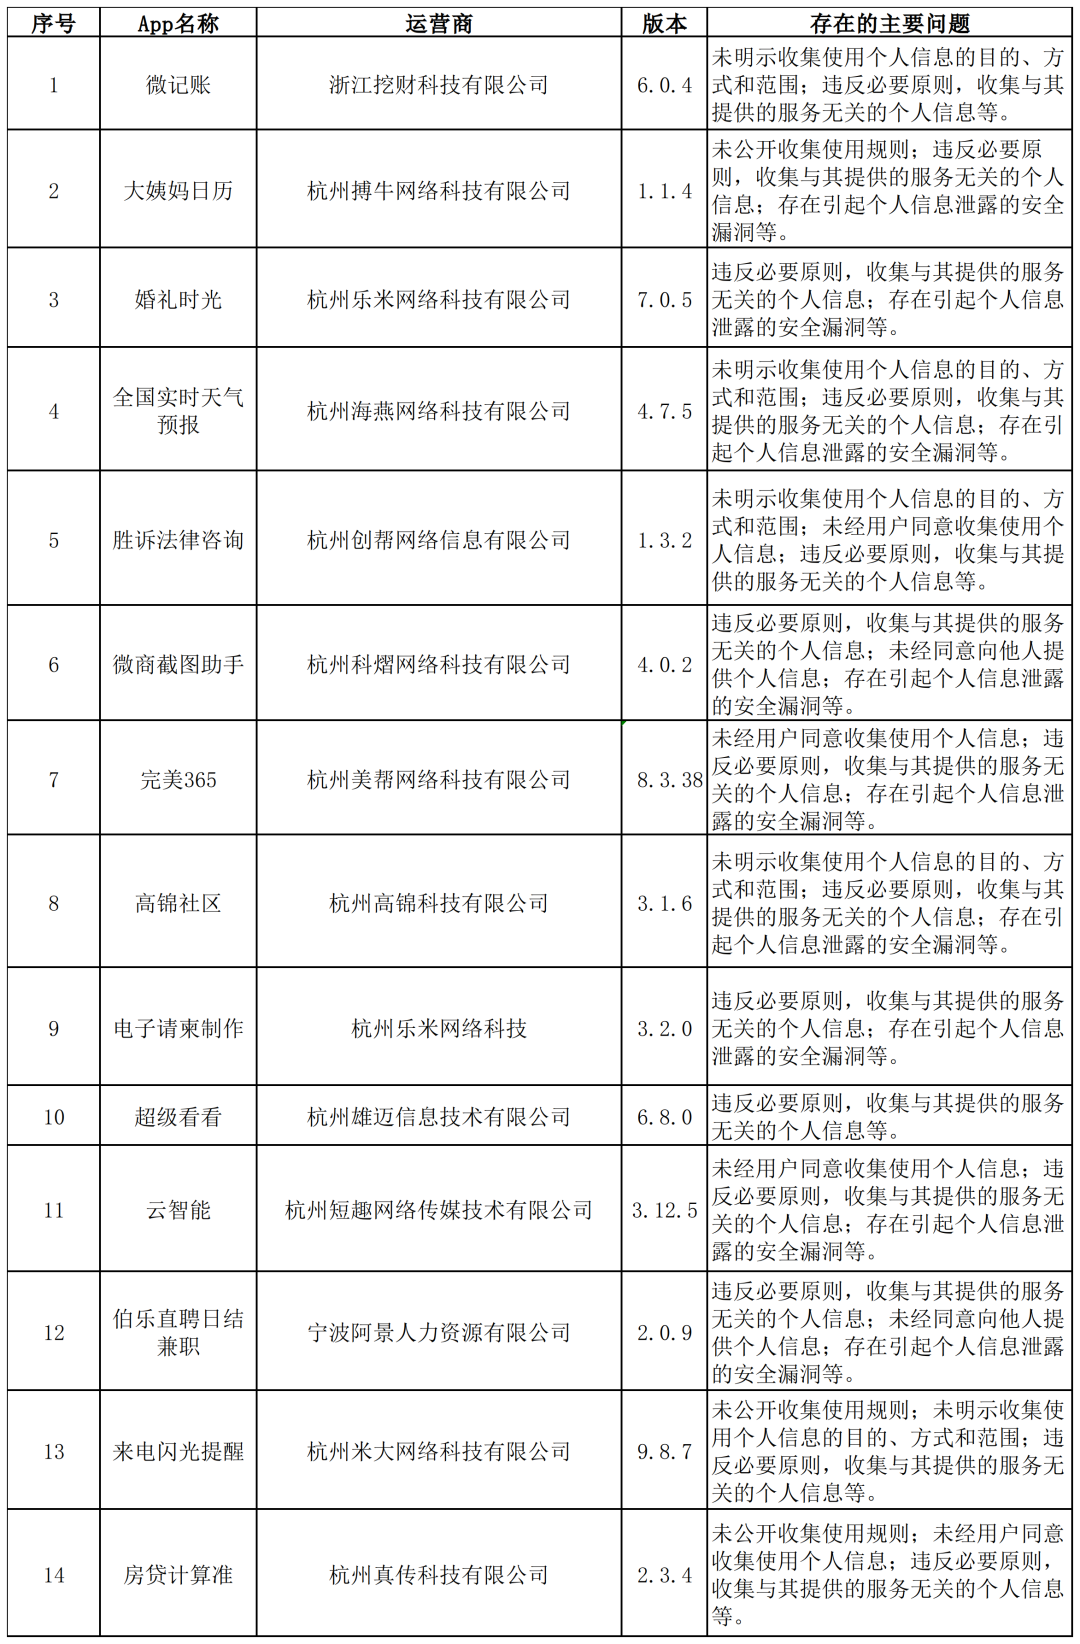 利用APP违规采集个人信息，海珠21家企业被处罚